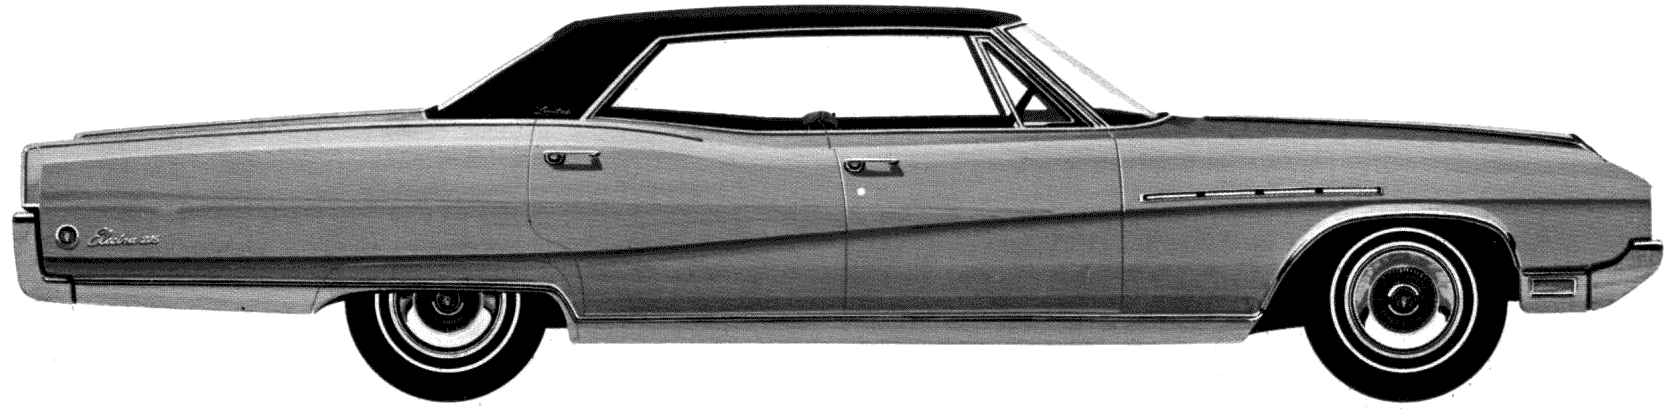 Bil Buick Electra 225 Limited 4-Door Hardtop 1968 